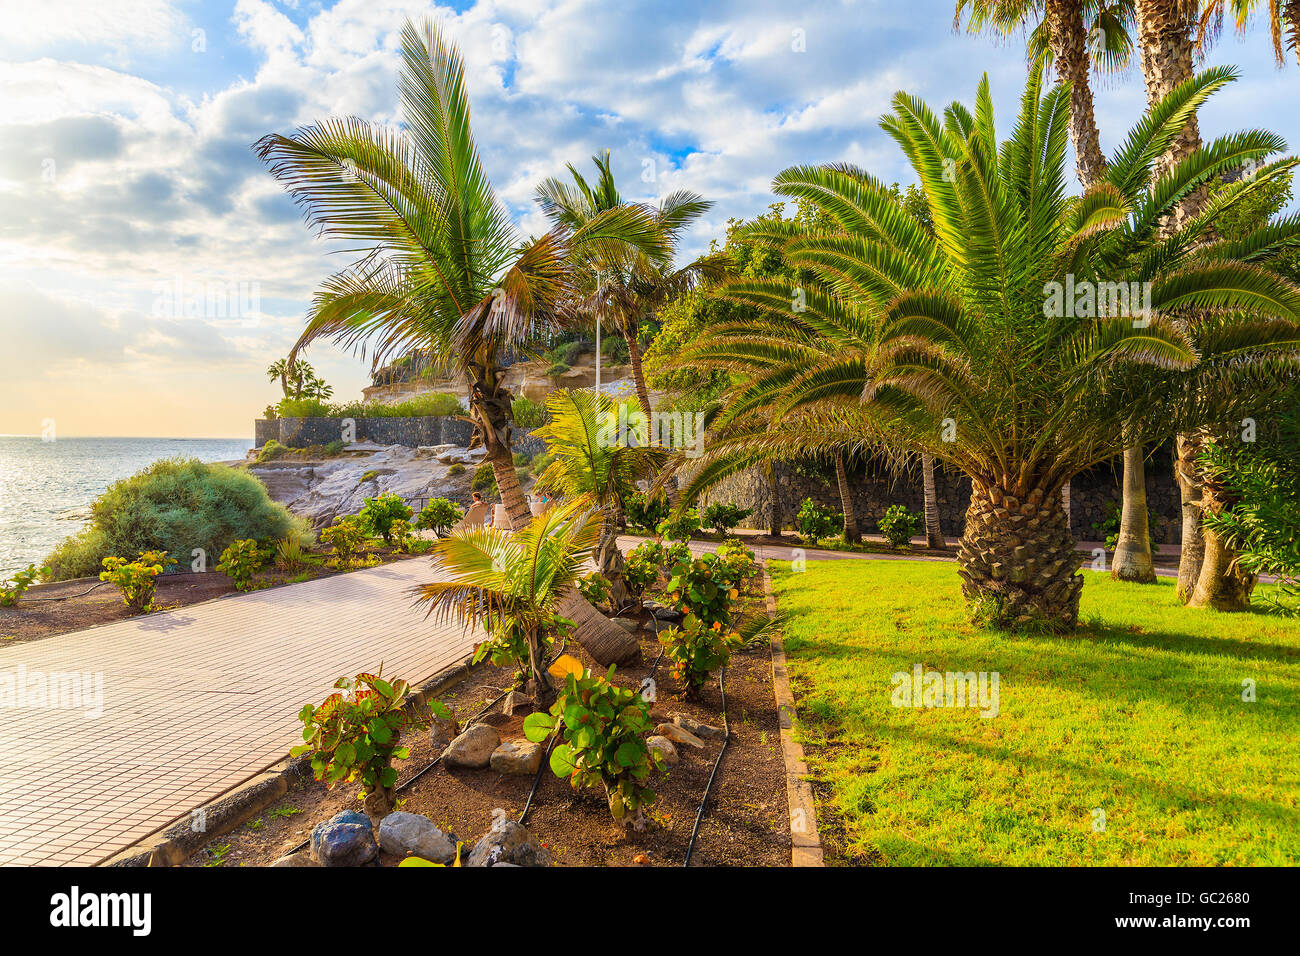 Esotica passeggiata costiera con le palme in Costa Adeje città di vacanze, Tenerife, Isole Canarie, Spagna Foto Stock